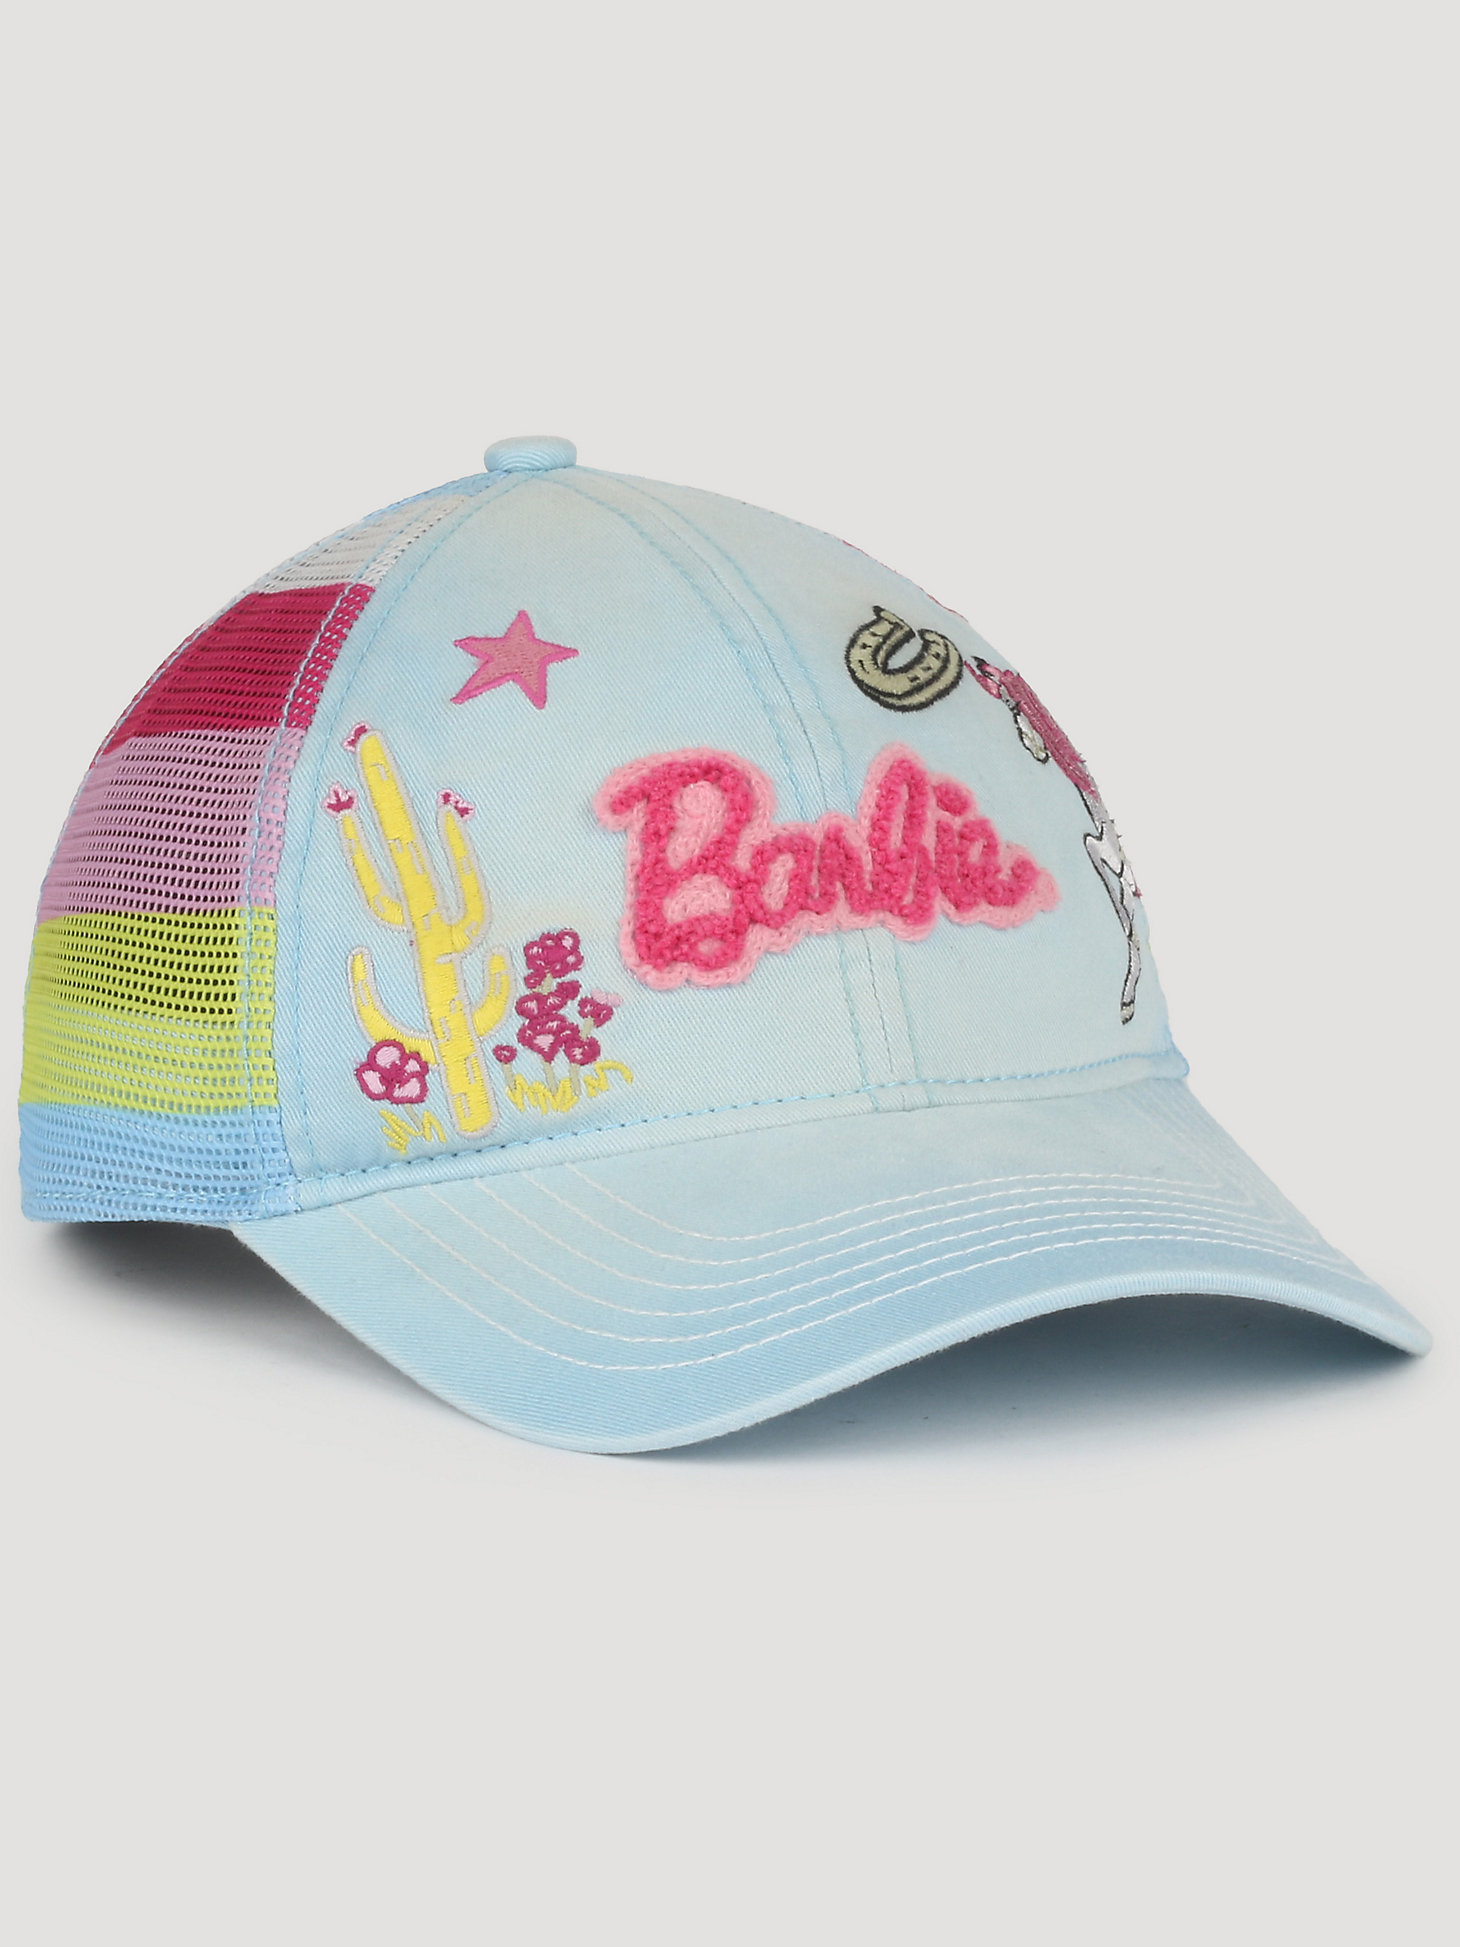 New Wrangler x Barbie baseball cap